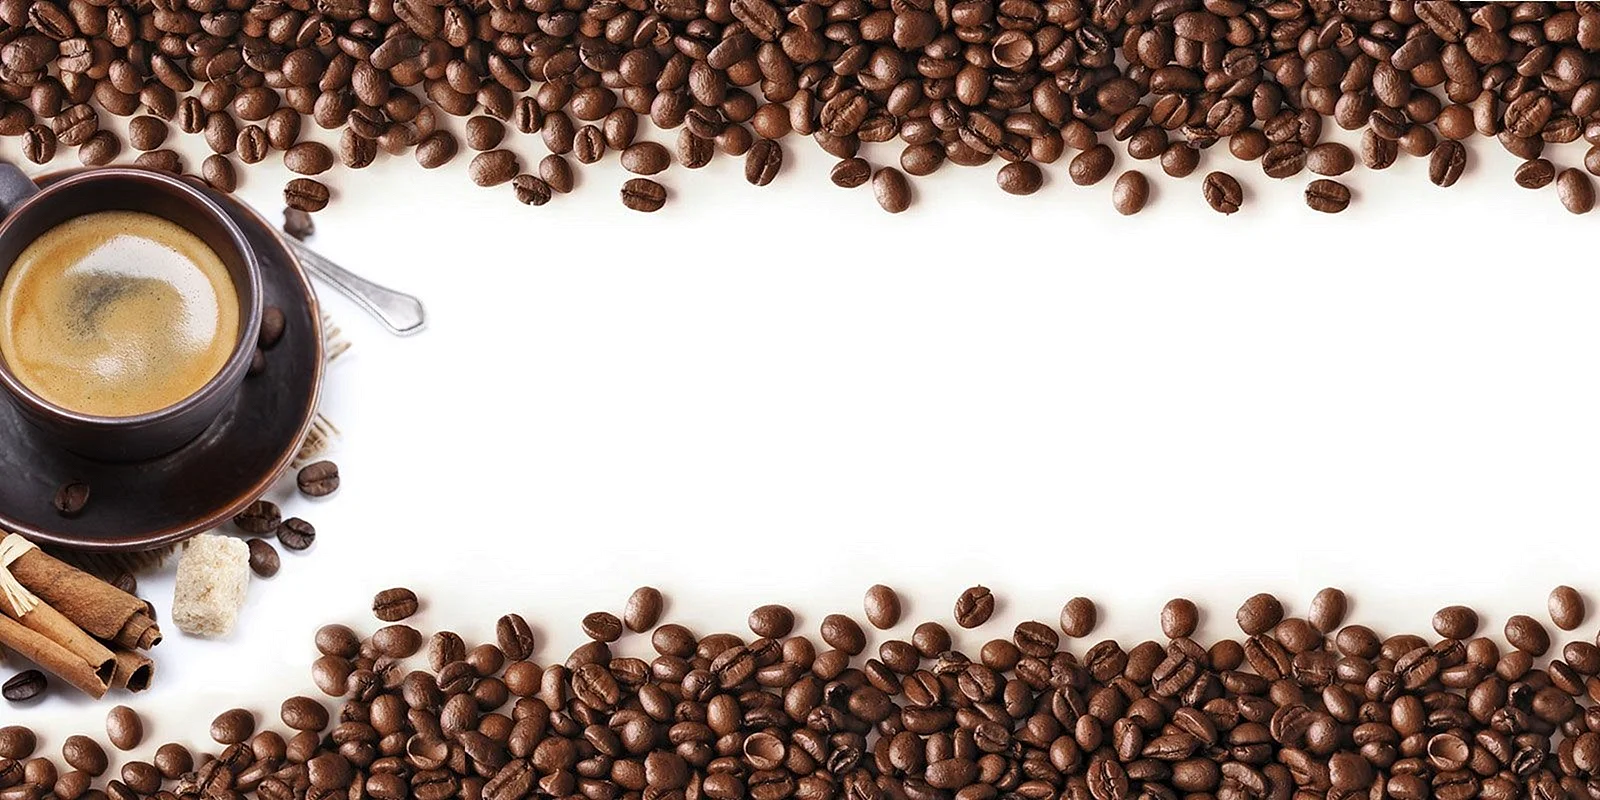 Рамка кофейные зерна